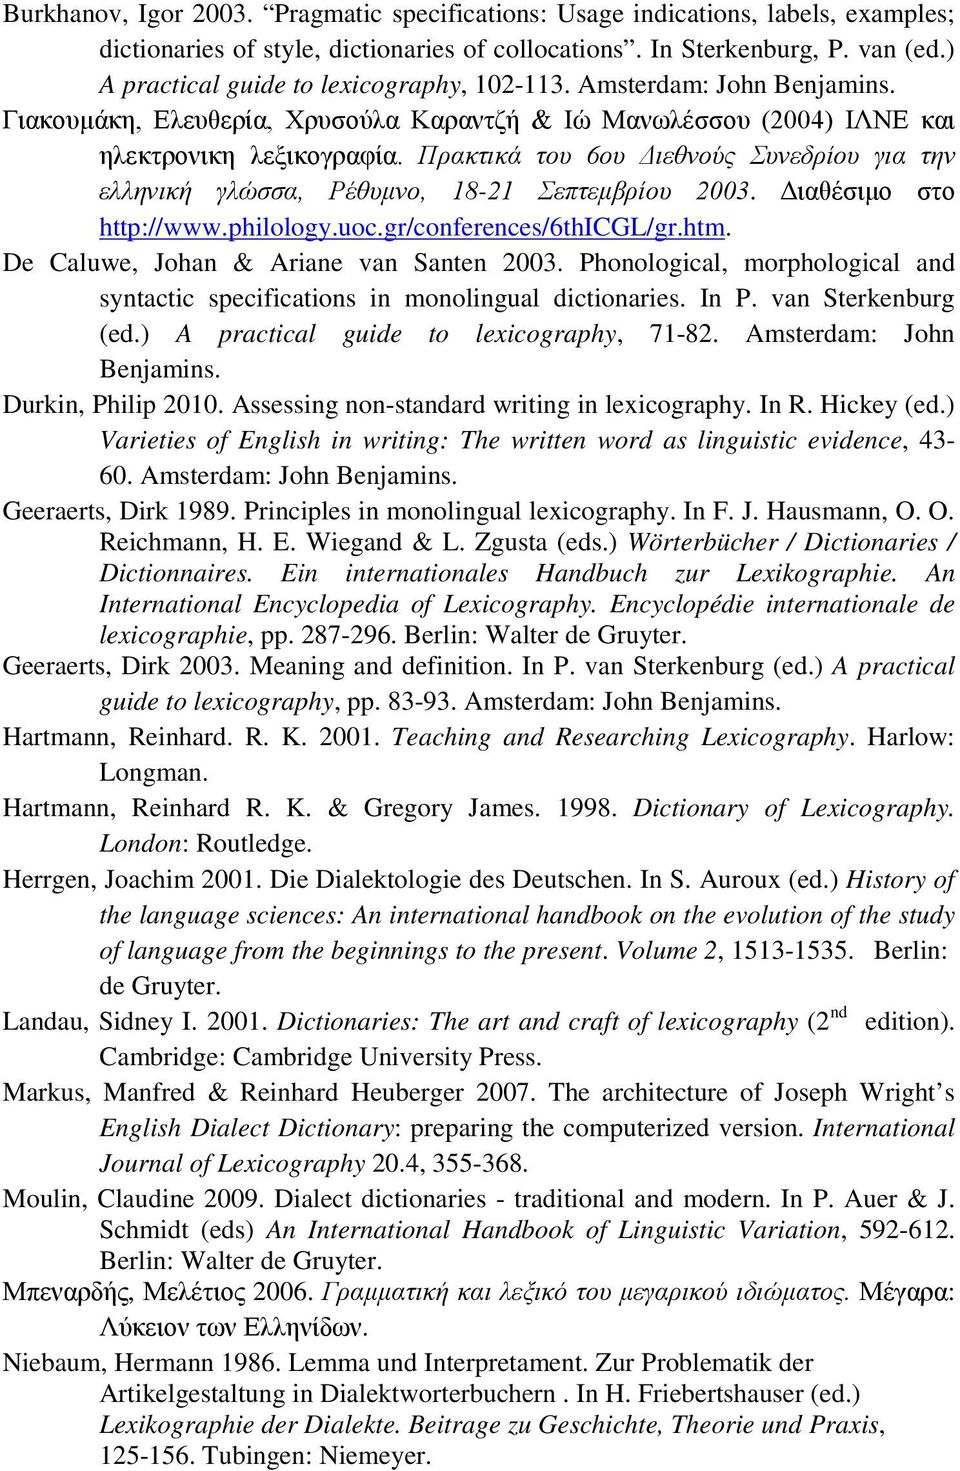 Πρακτικά του 6ου Διεθνούς Συνεδρίου για την ελληνική γλώσσα, Ρέθυμνο, 18-21 Σεπτεμβρίου 2003. Διαθέσιμο στο http://www.philology.uoc.gr/conferences/6thicgl/gr.htm.